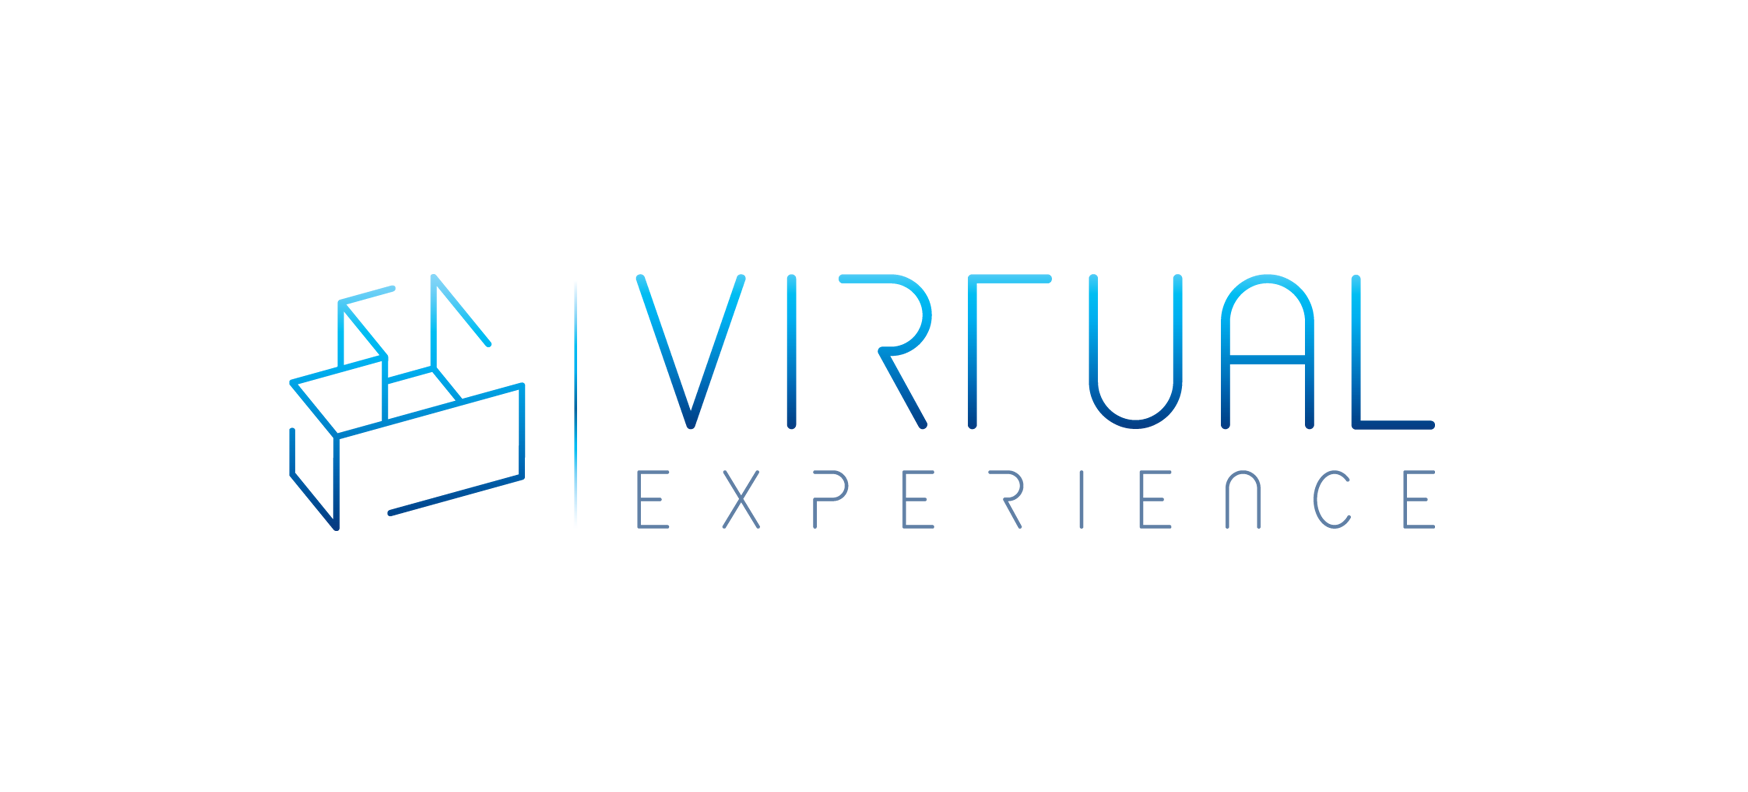 Virtual Experience